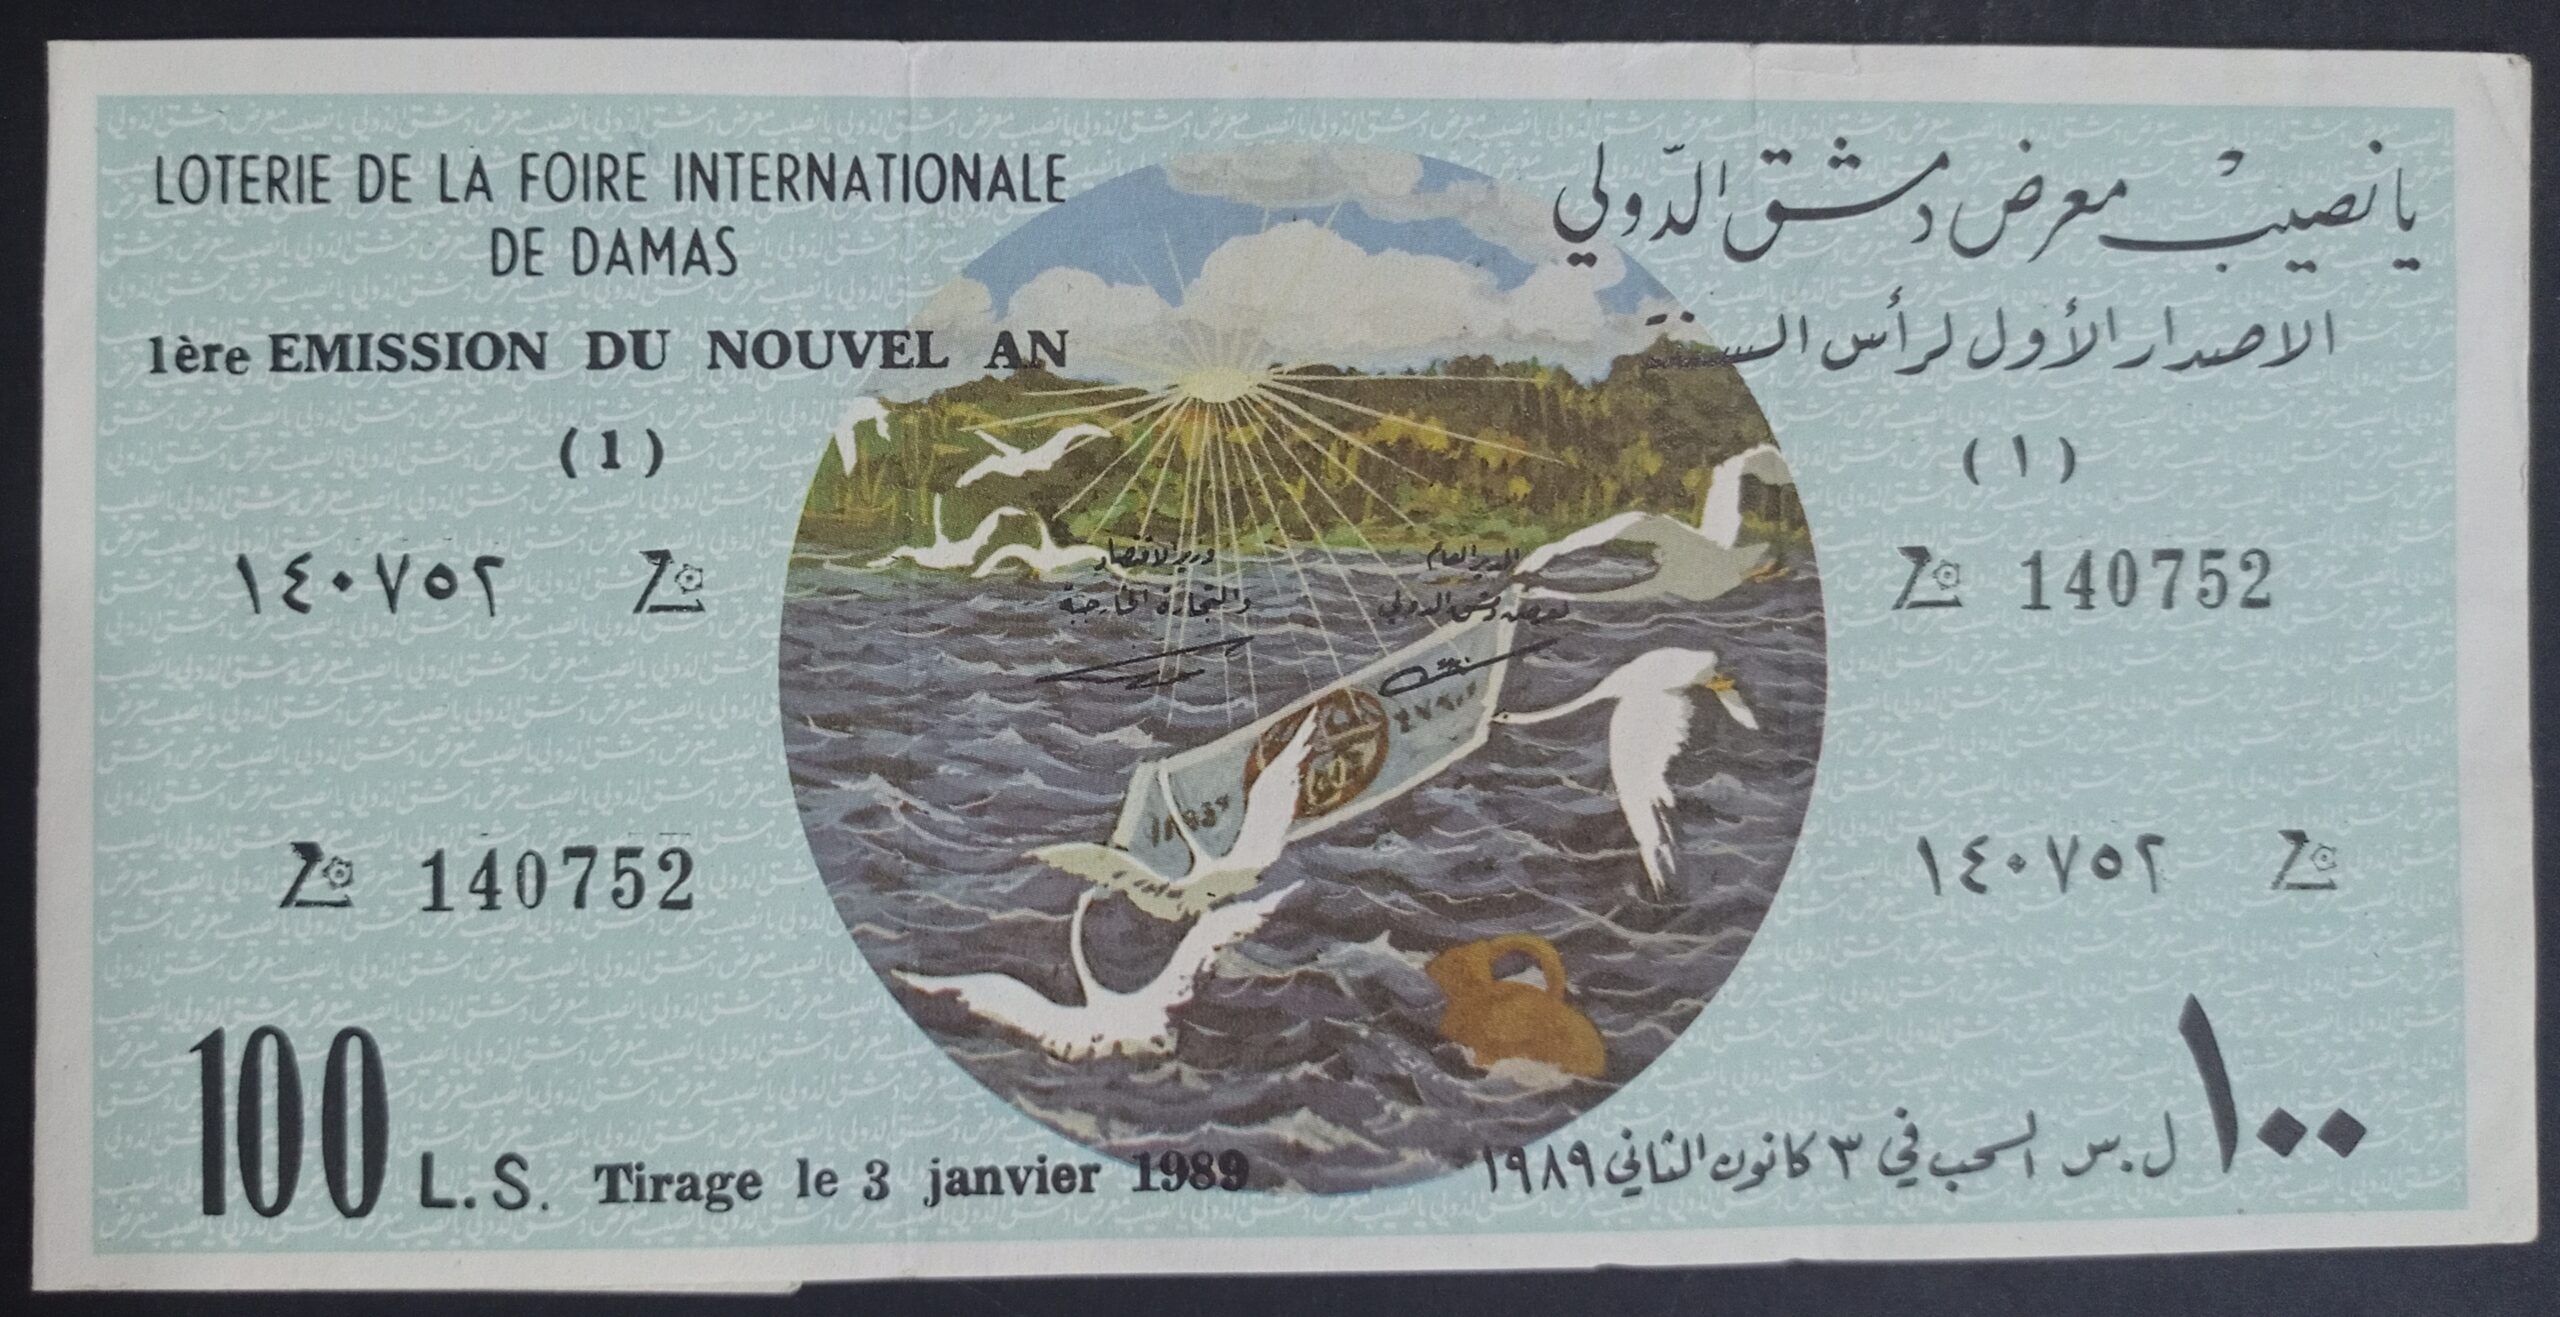 التاريخ السوري المعاصر - يانصيب معرض دمشق الدولي - الإصدار الأول لرأس السنة عام 1989